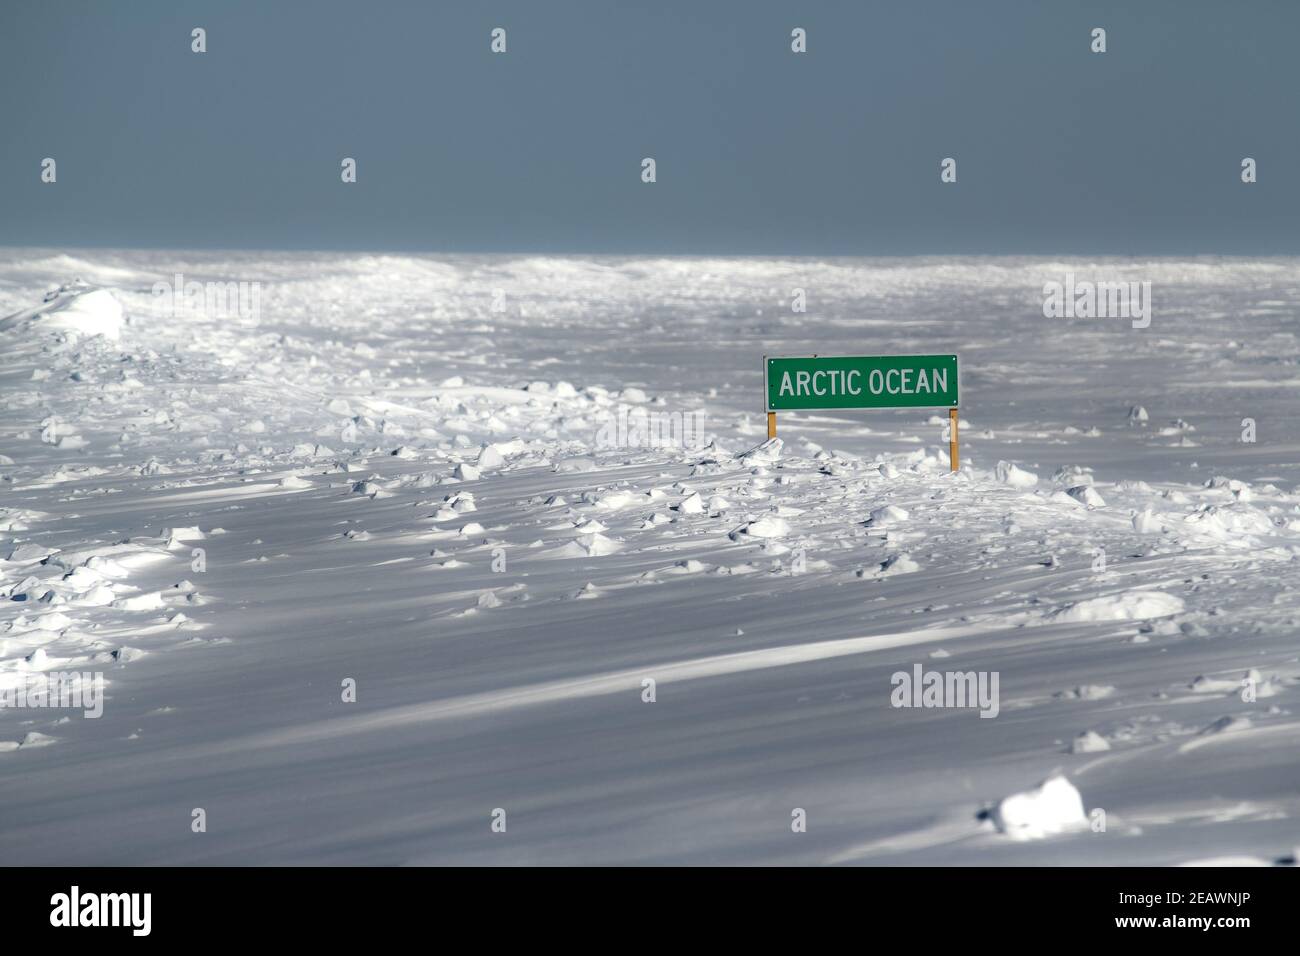 Señal de la carretera del Océano Ártico saliendo de la nieve a lo largo de la vieja carretera de hielo Inuvik-Tuktoyaktuk-Aklivik en invierno, Territorios del Noroeste, Canadá. Foto de stock